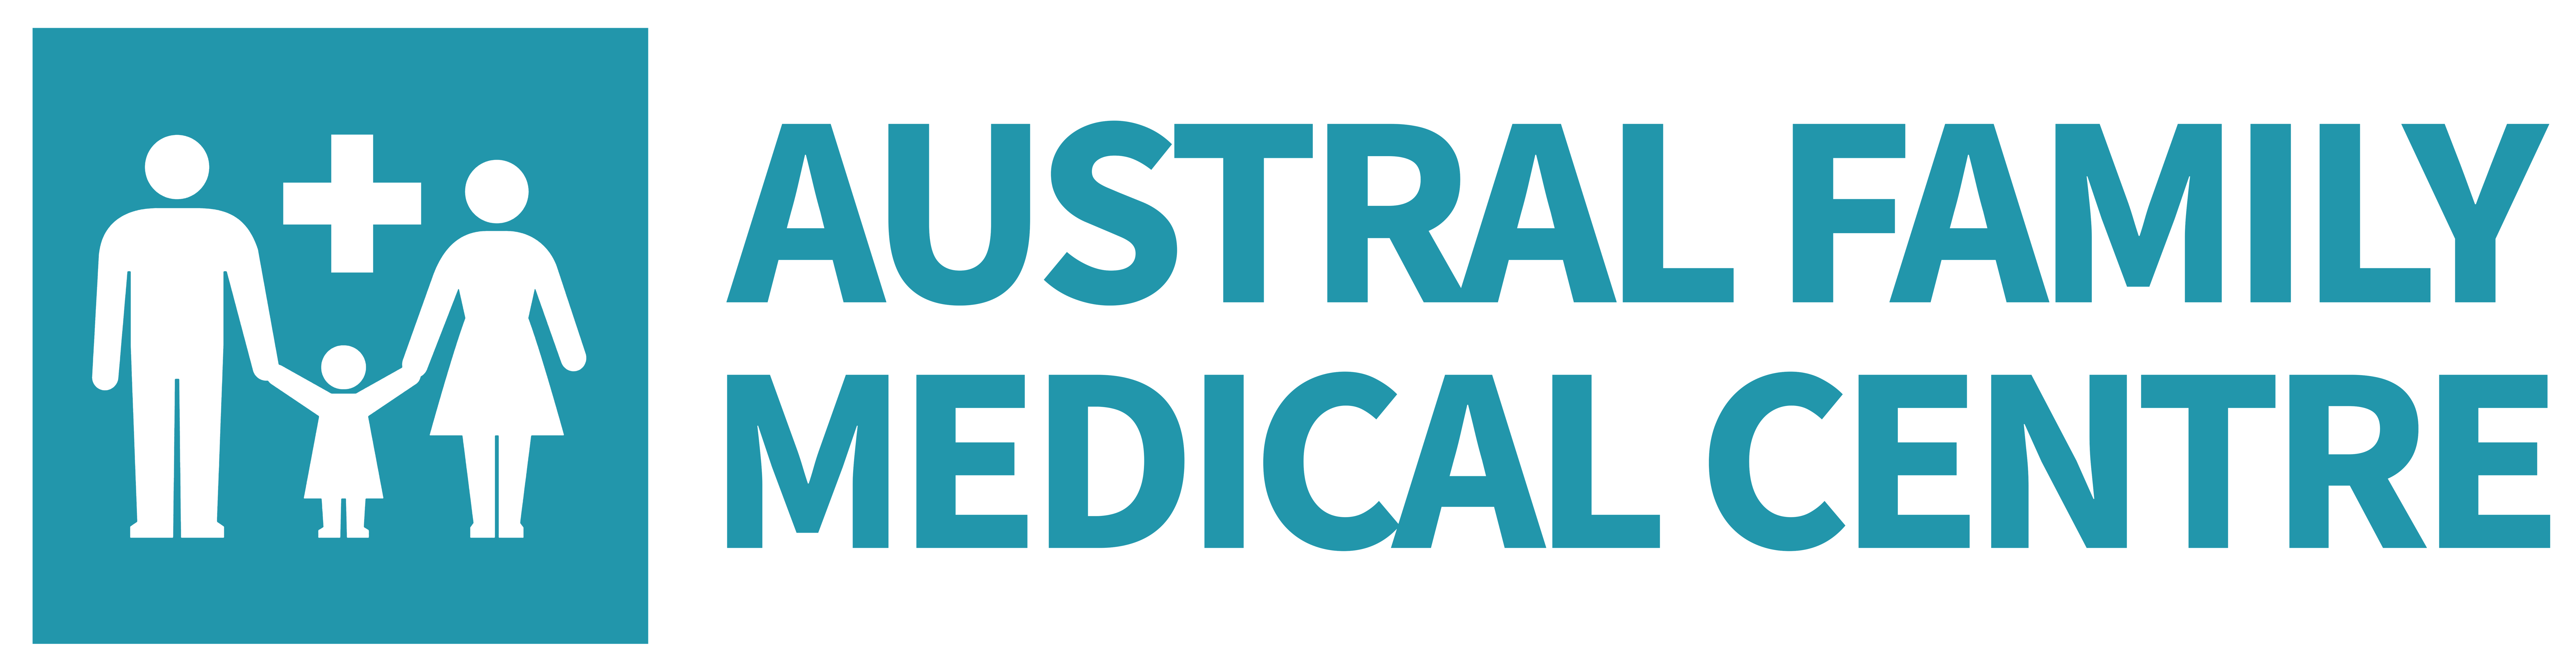 Austral Family Medical Centre 